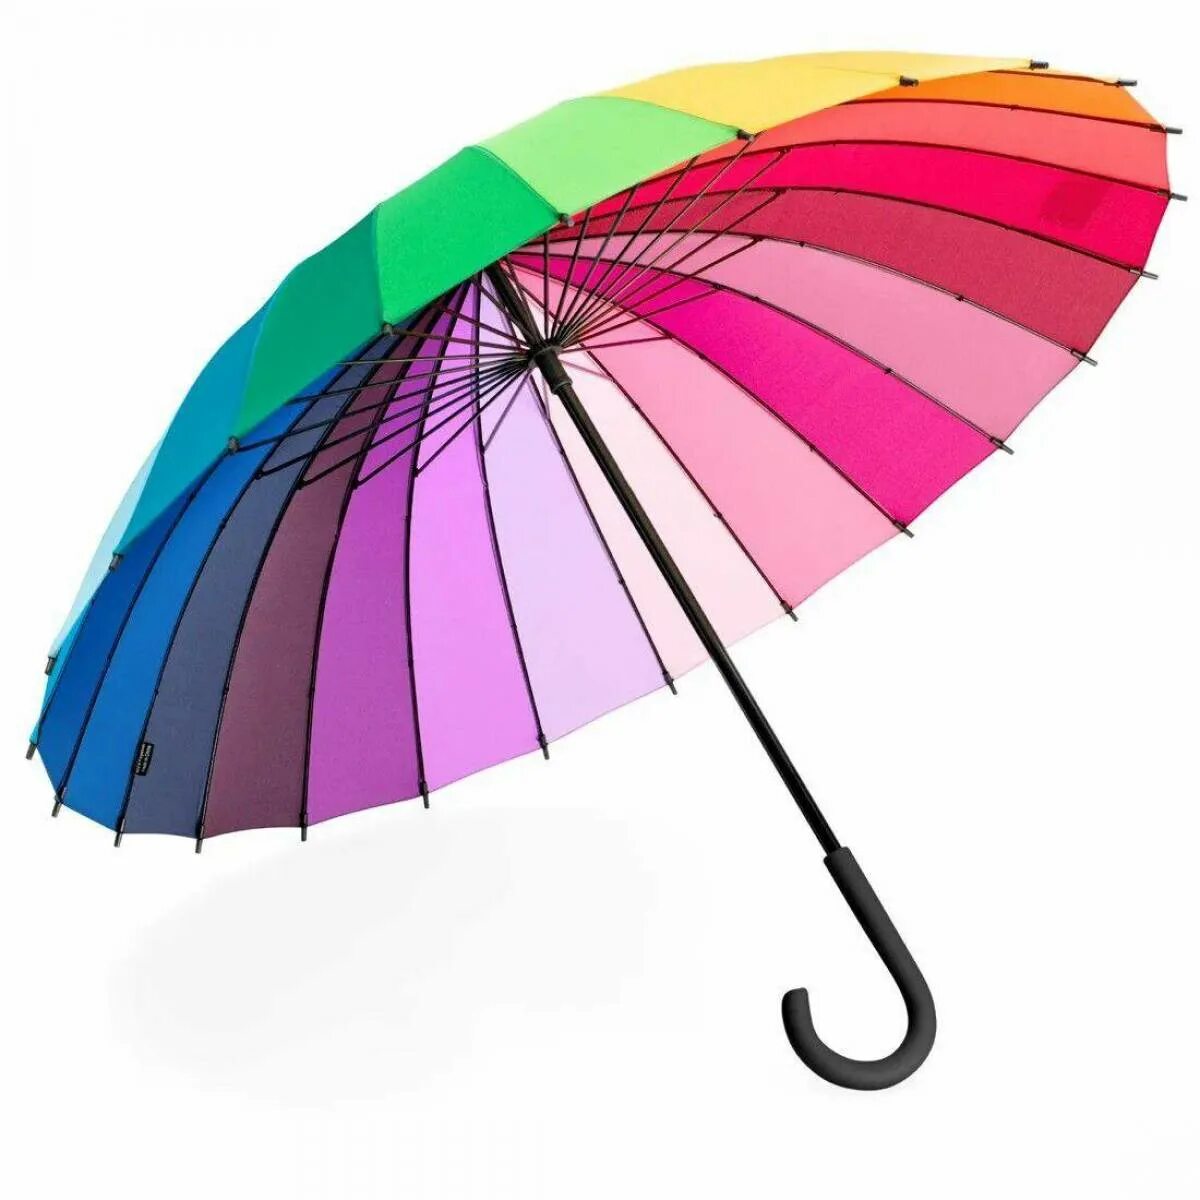 Зонтик короле. Разноцветные зонтики. Раскрытый зонтик. Разноцветный зонт. Зонт на прозрачном фоне.